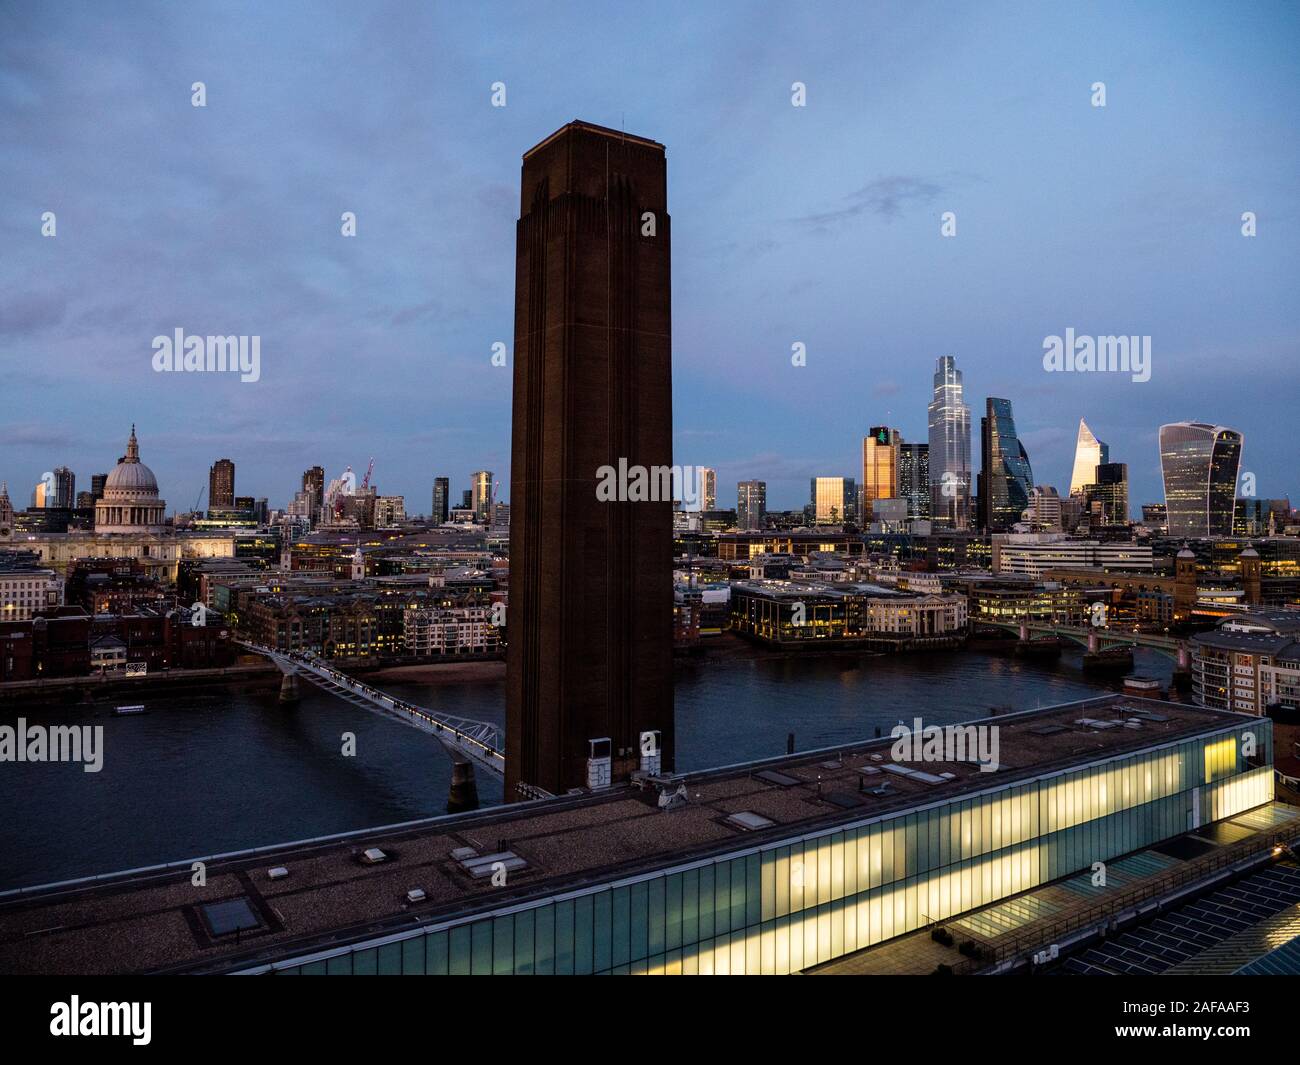 Das Dach des Tate Modern, die Themse, die St. Paul's Cathedral und die City von London, Nacht, London, England, UK, GB. Stockfoto